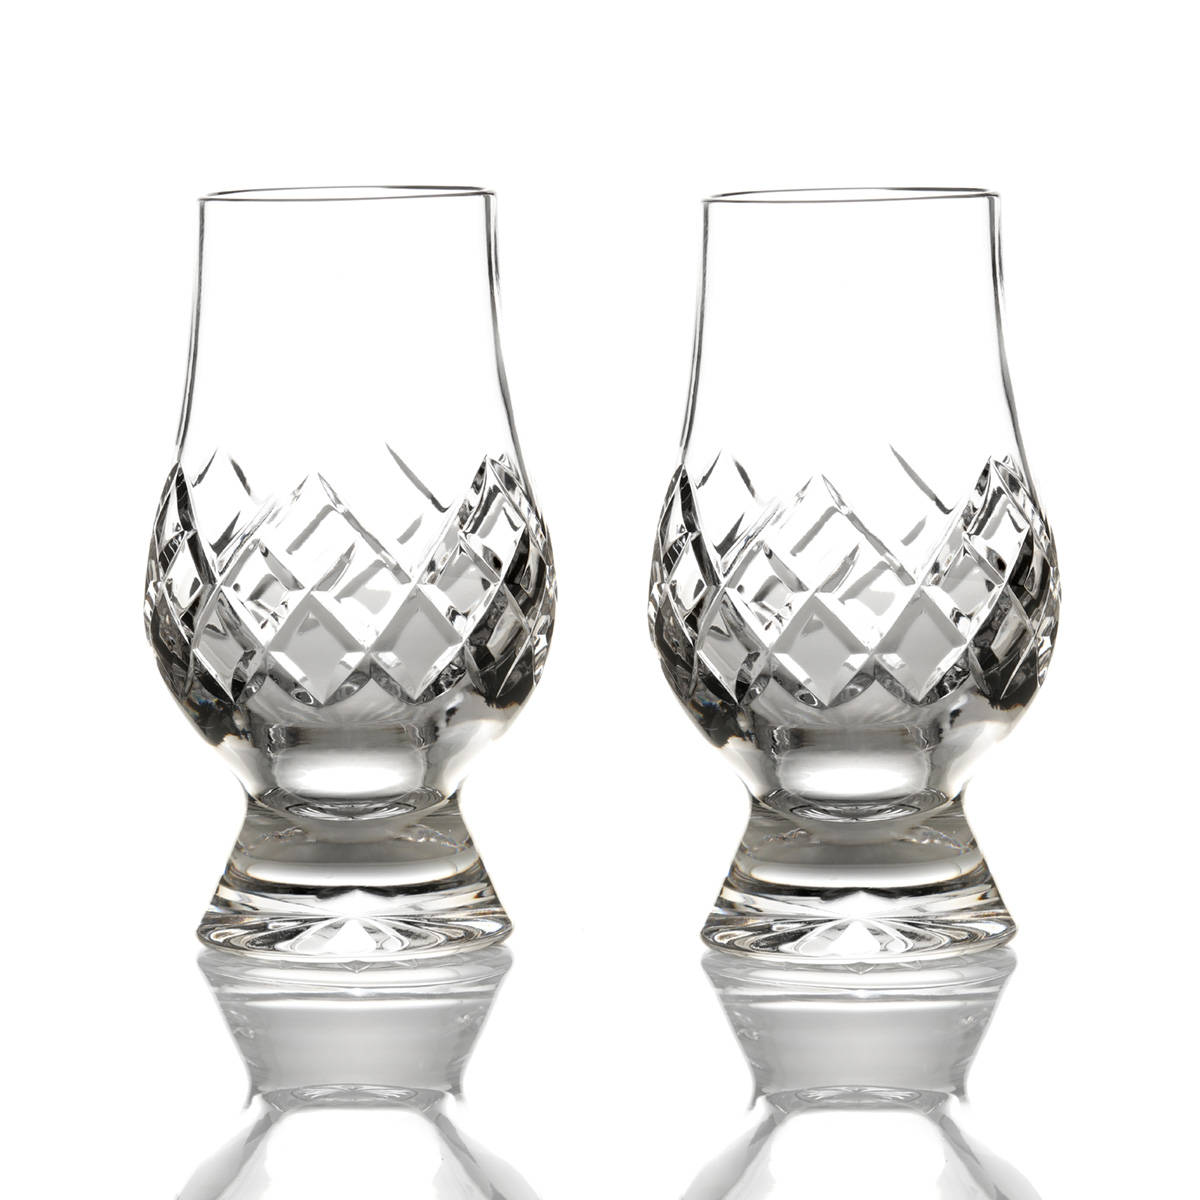 2 x Glencairn Cut Crystal Tasting Glas im Luxus Doppel Set - Original aus Schottland